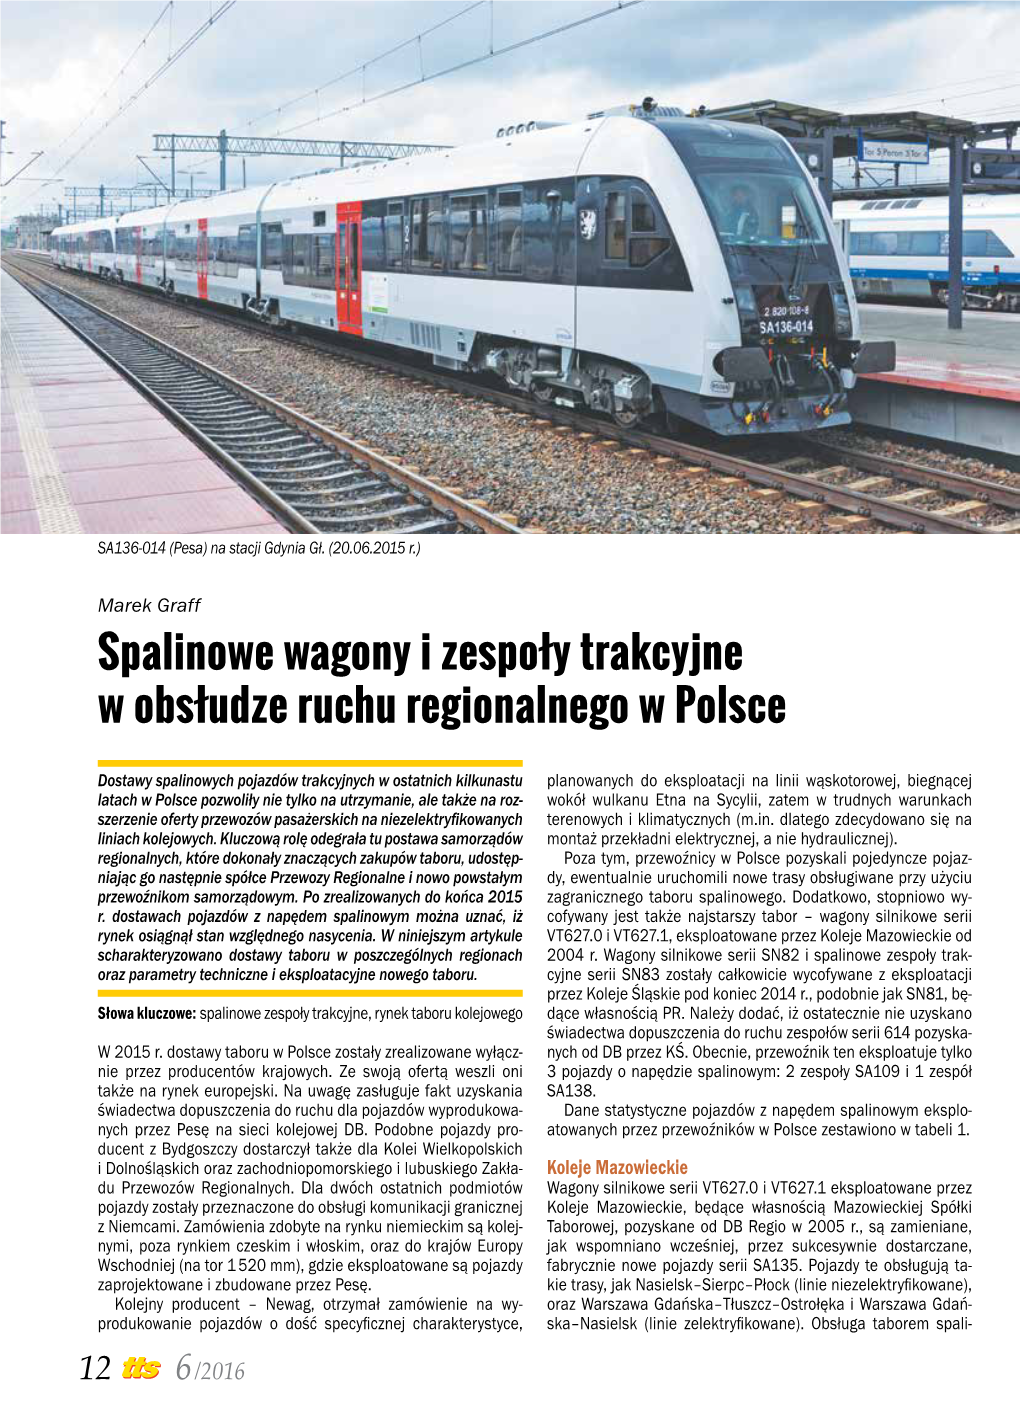 Spalinowe Wagony I Zespoły Trakcyjne W Obsłudze Ruchu Regionalnego W Polsce